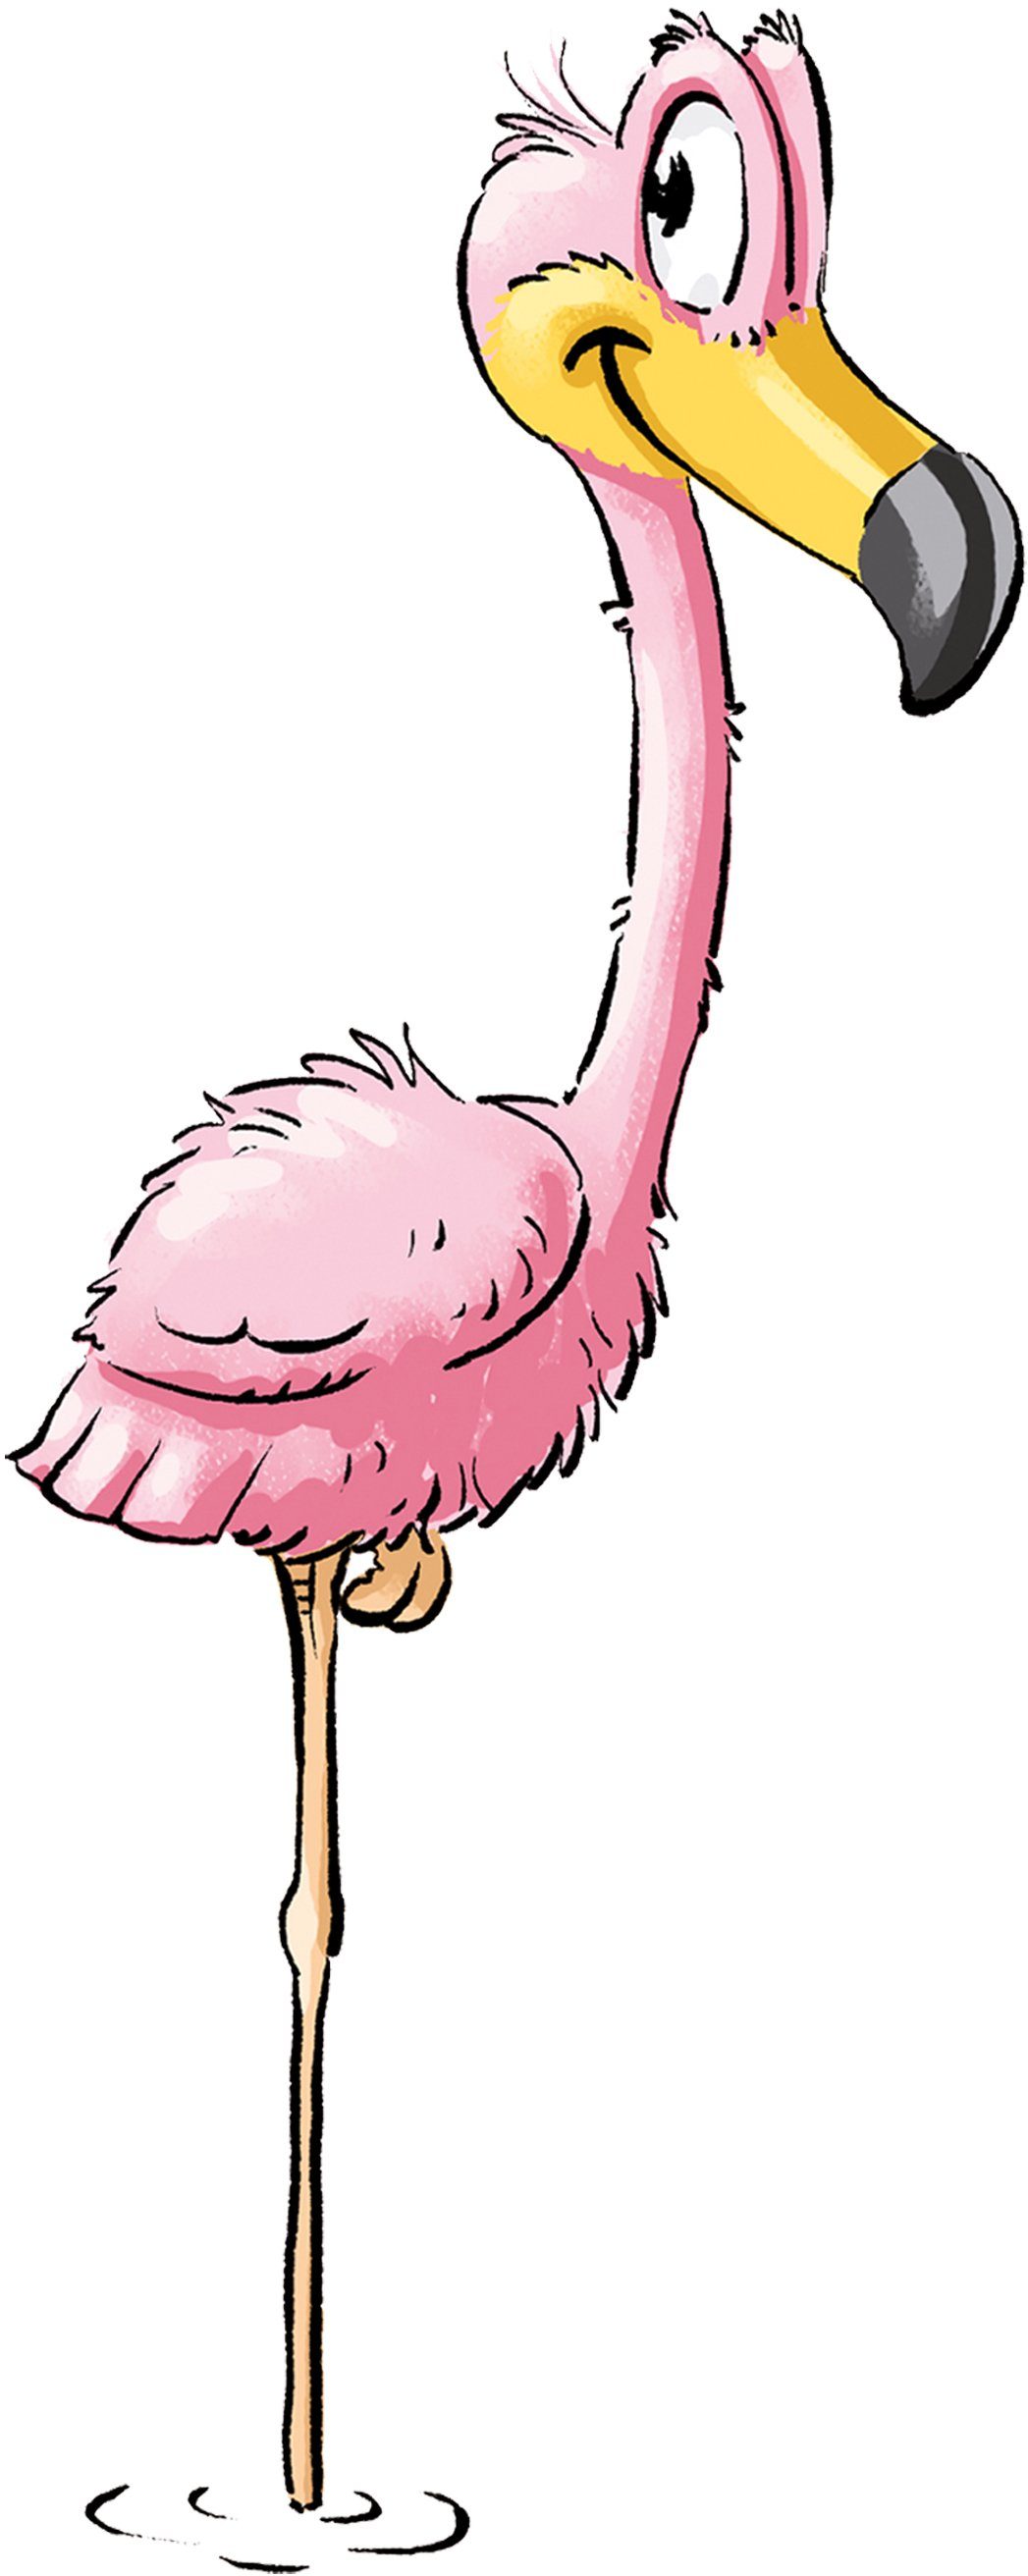 Ritzenhoff & Breker Kindergeschirr-Set Happy 1 3 1 Flo Person mit Teile, für Flamingo-Dekor, (3-tlg), Personen, Porzellan, Zoo